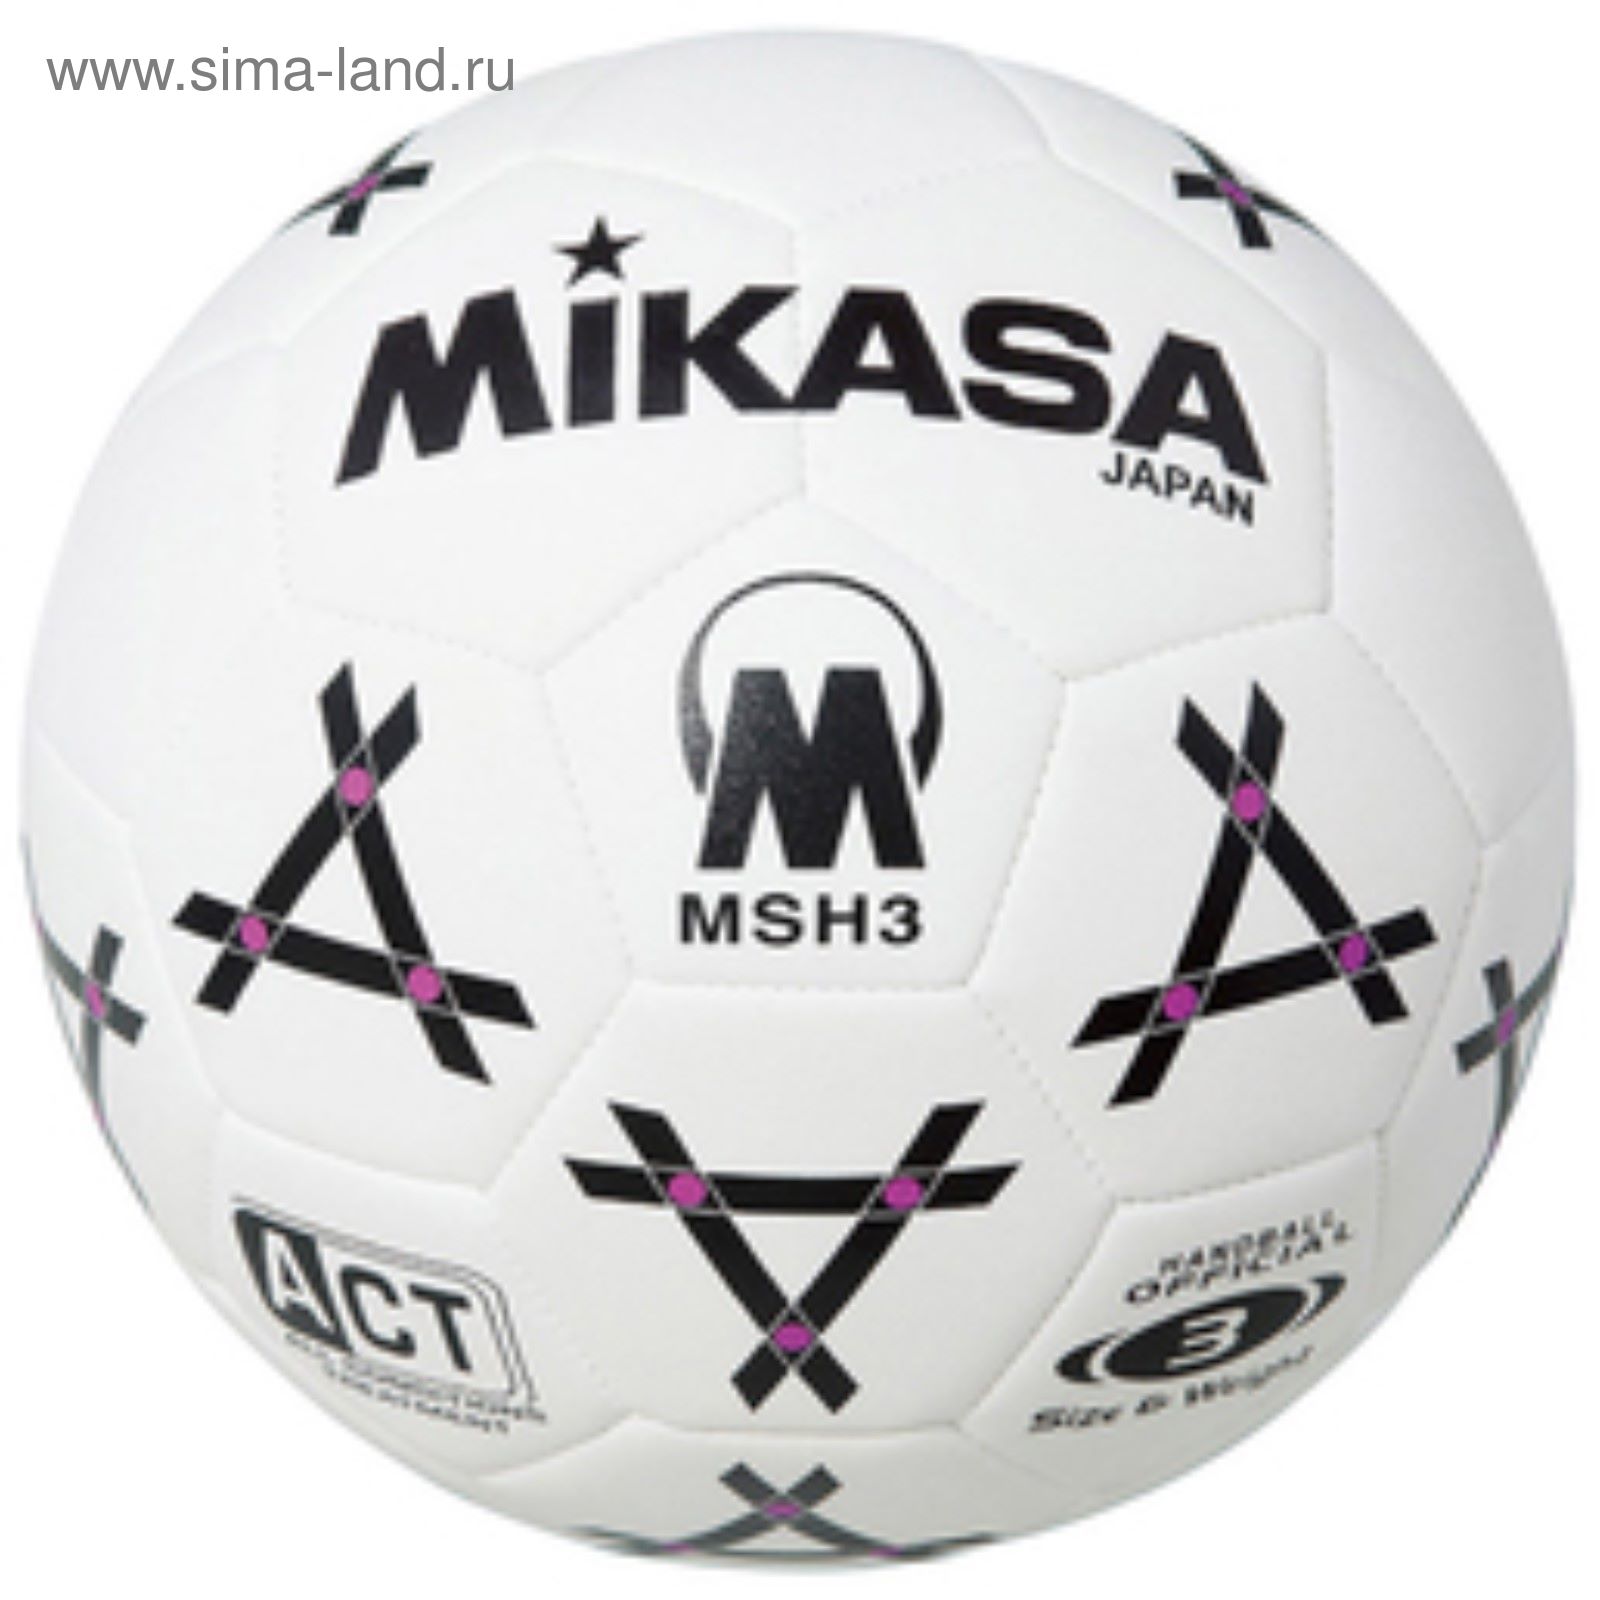 Мяч гандбольный Mikasa MSH 3